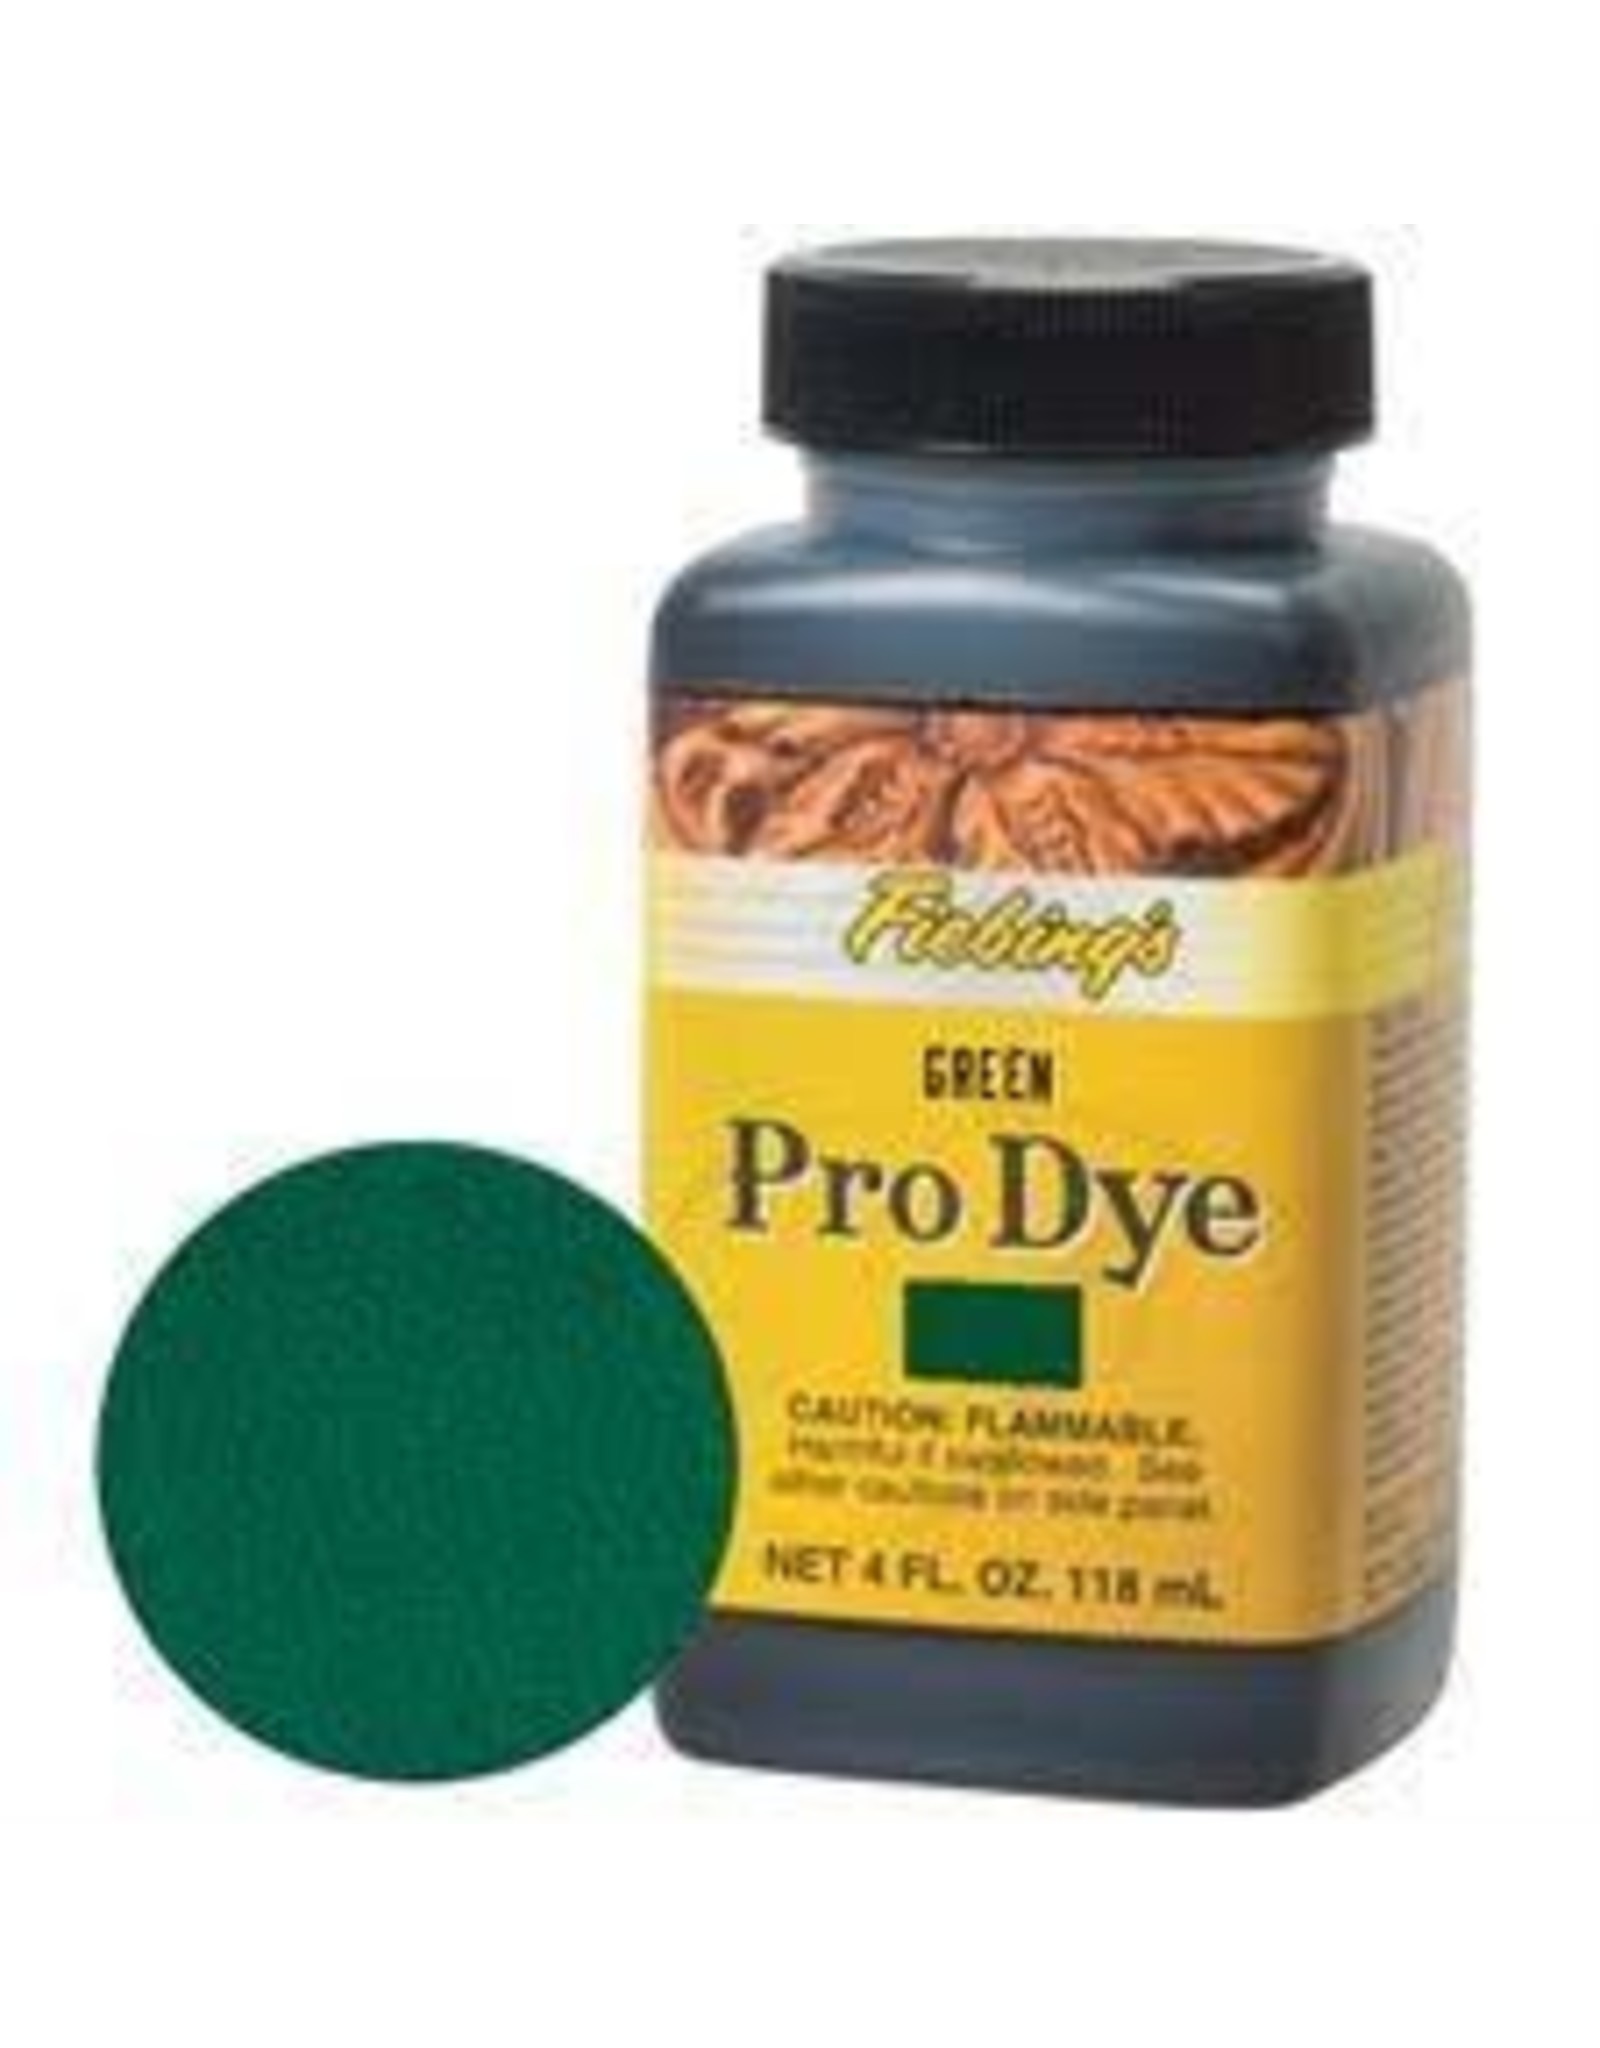 Fiebings Pro Dye Green - Professional Oil Dye 50-2030-GR 4 oz